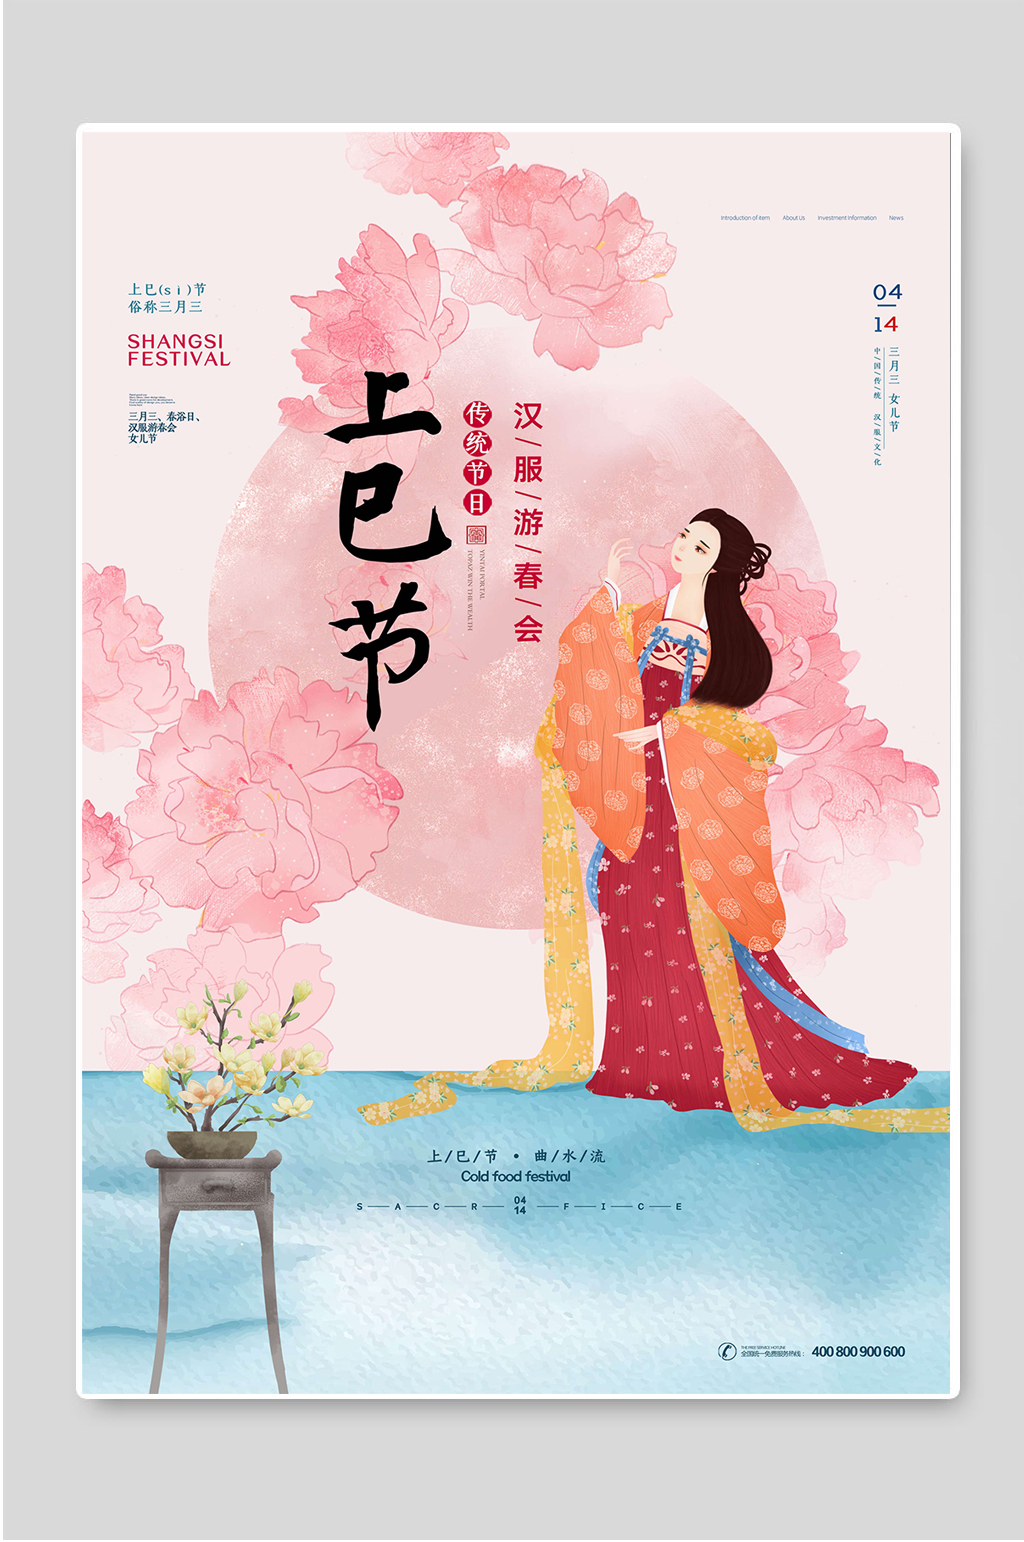 上巳节传统节日宣传海报